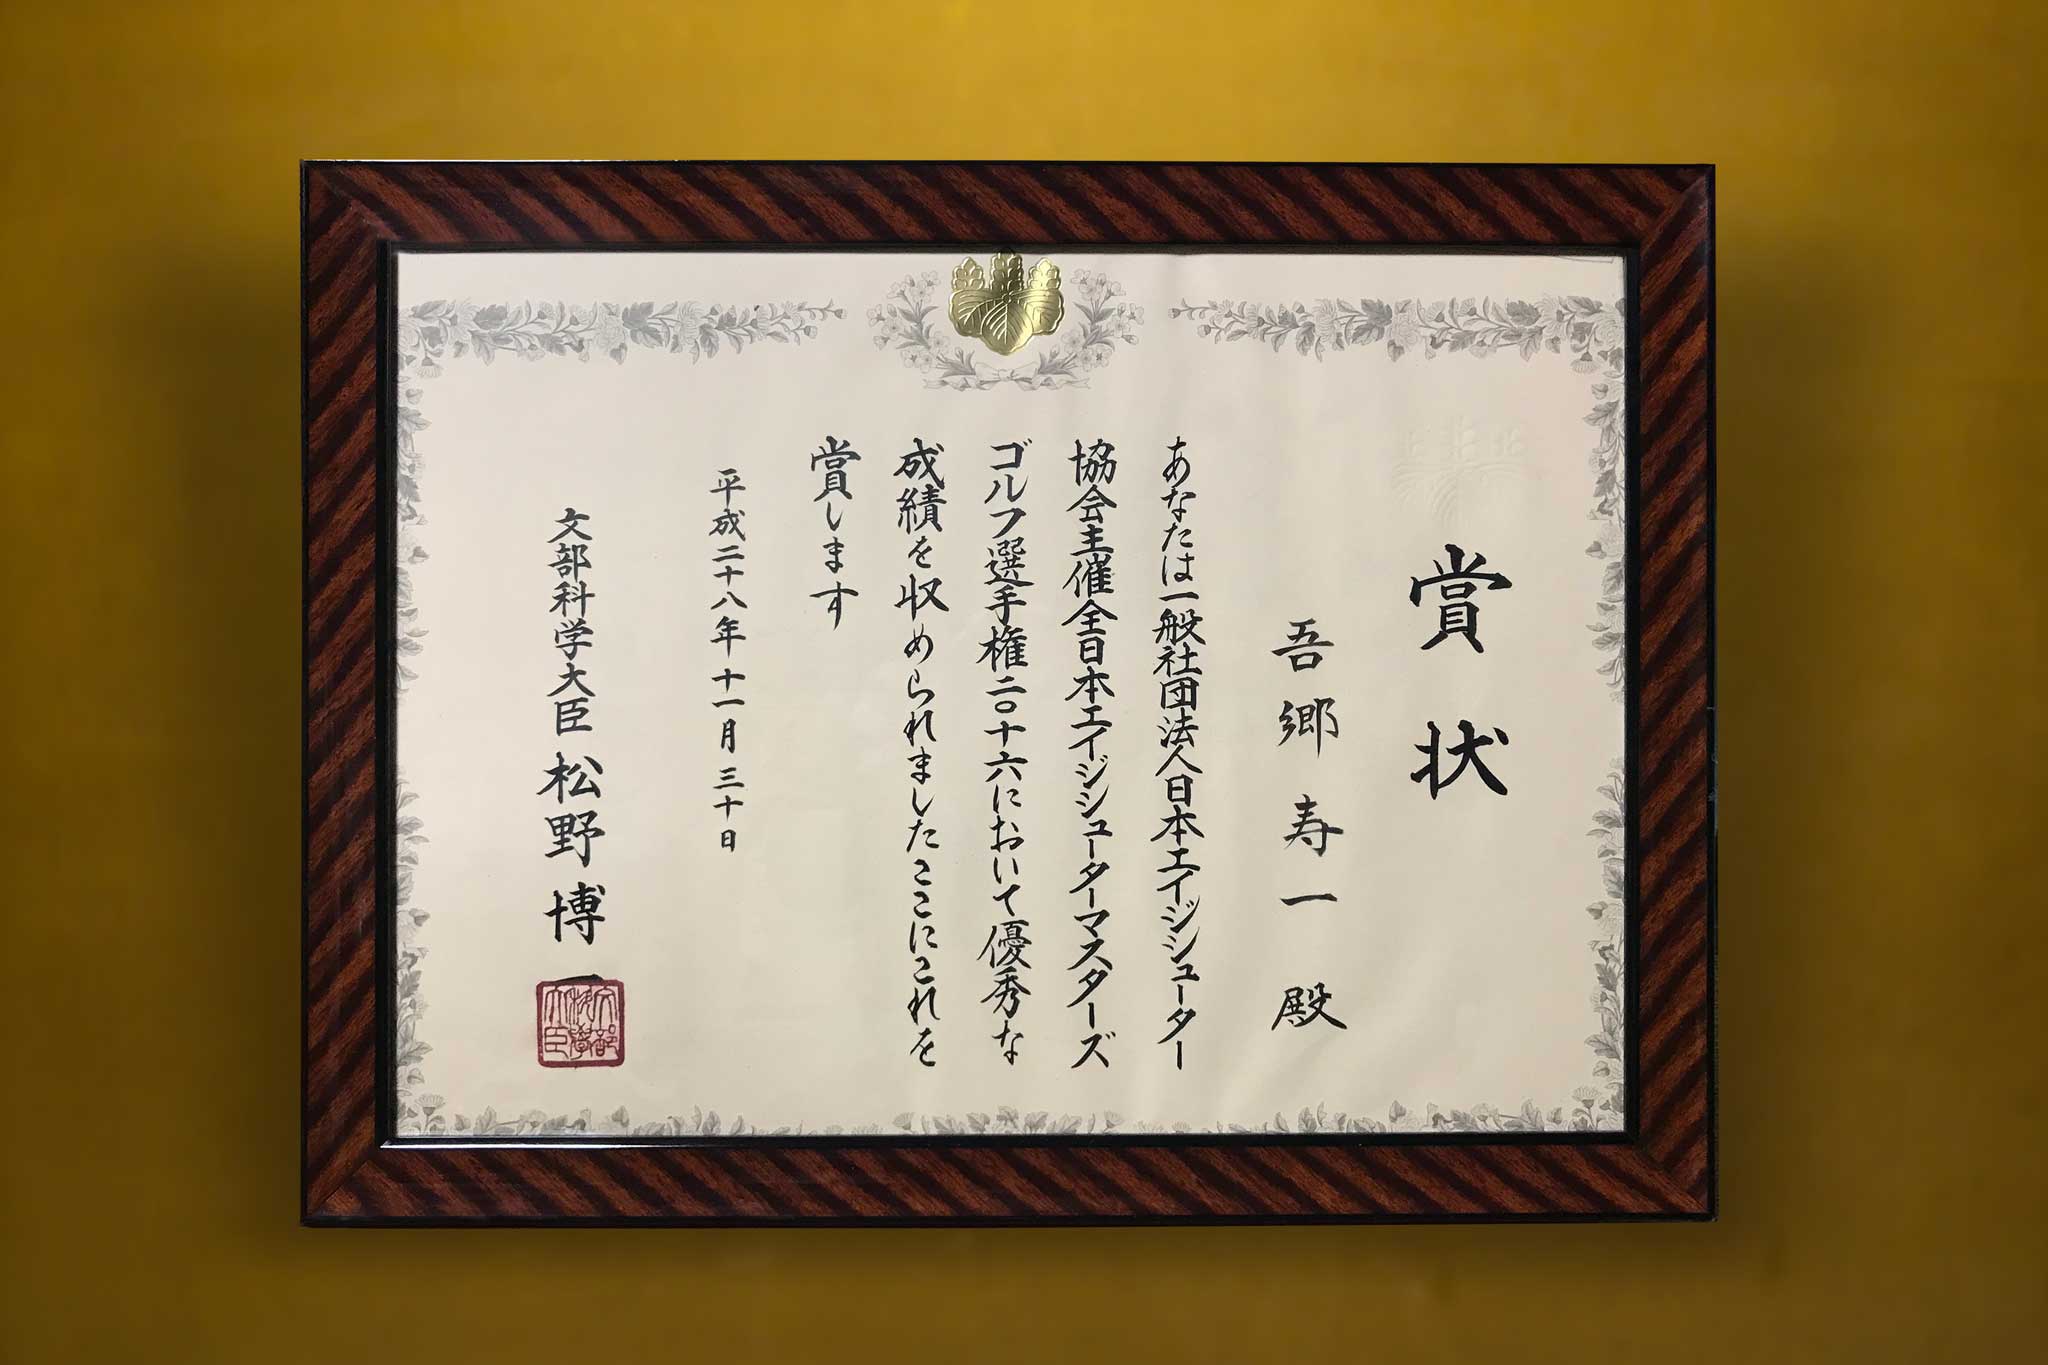 2016年 全日本エージシューターマスターズゴルフ選手権優勝記念 文部科学大臣賞の賞状の写真